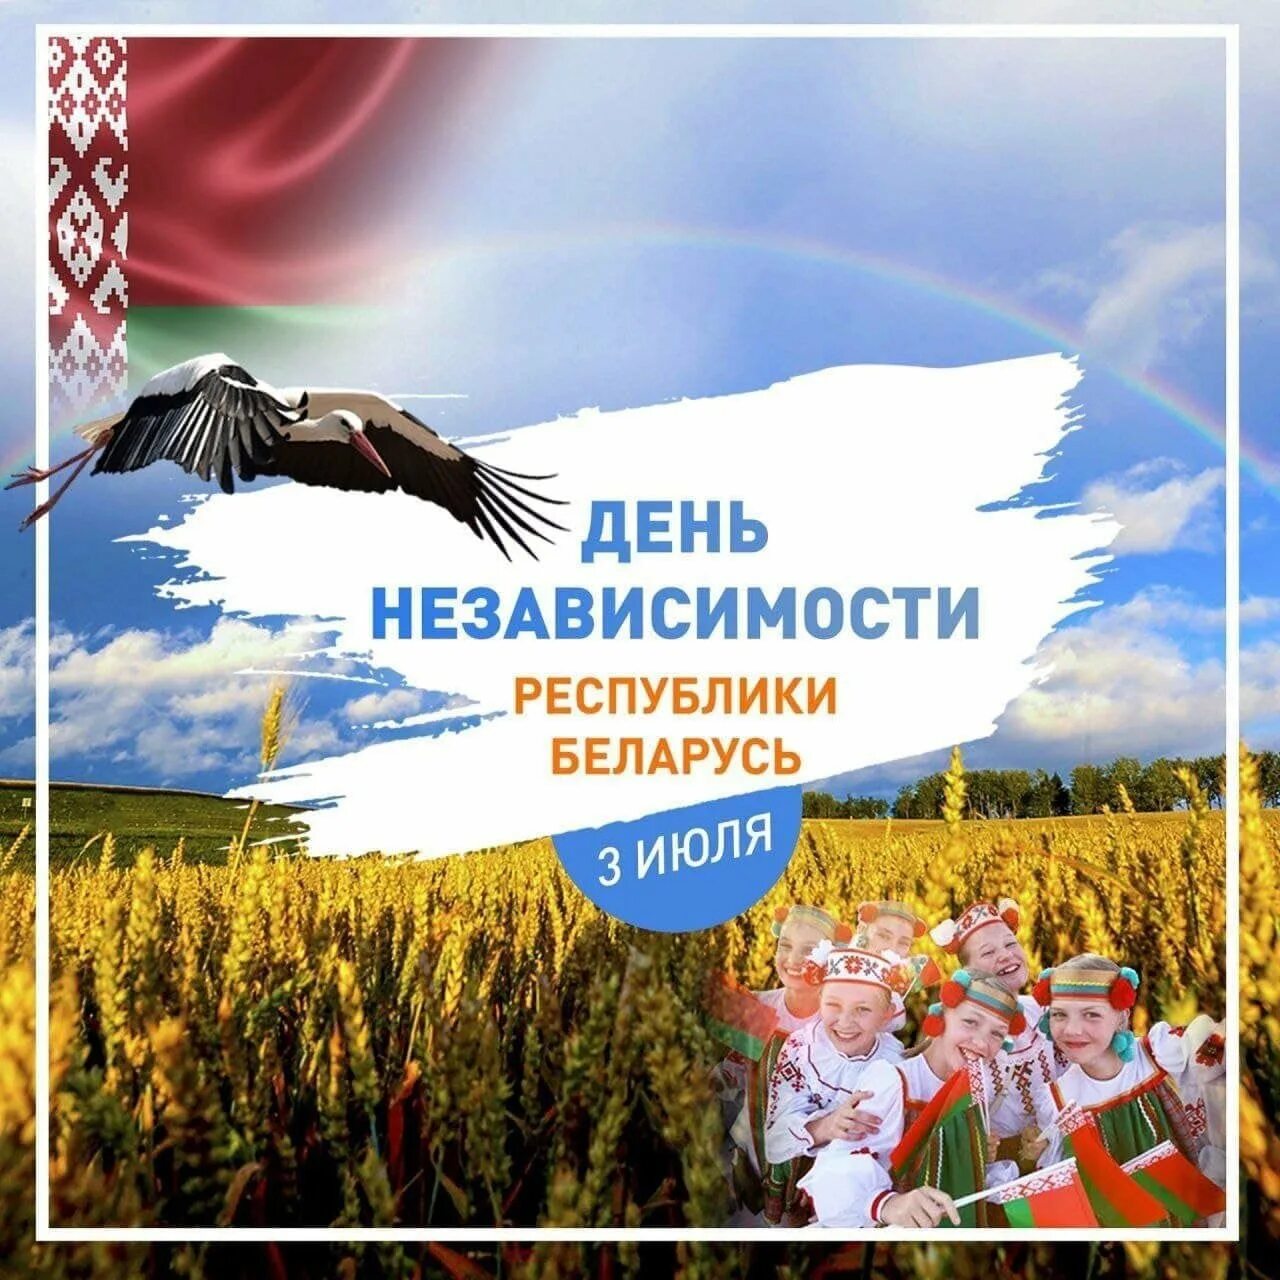 Сутки беларусь. День независимости. День независимости Беларуси. День независимости Республики Беларусь (день Республики). Поздравляю с днем независимости.